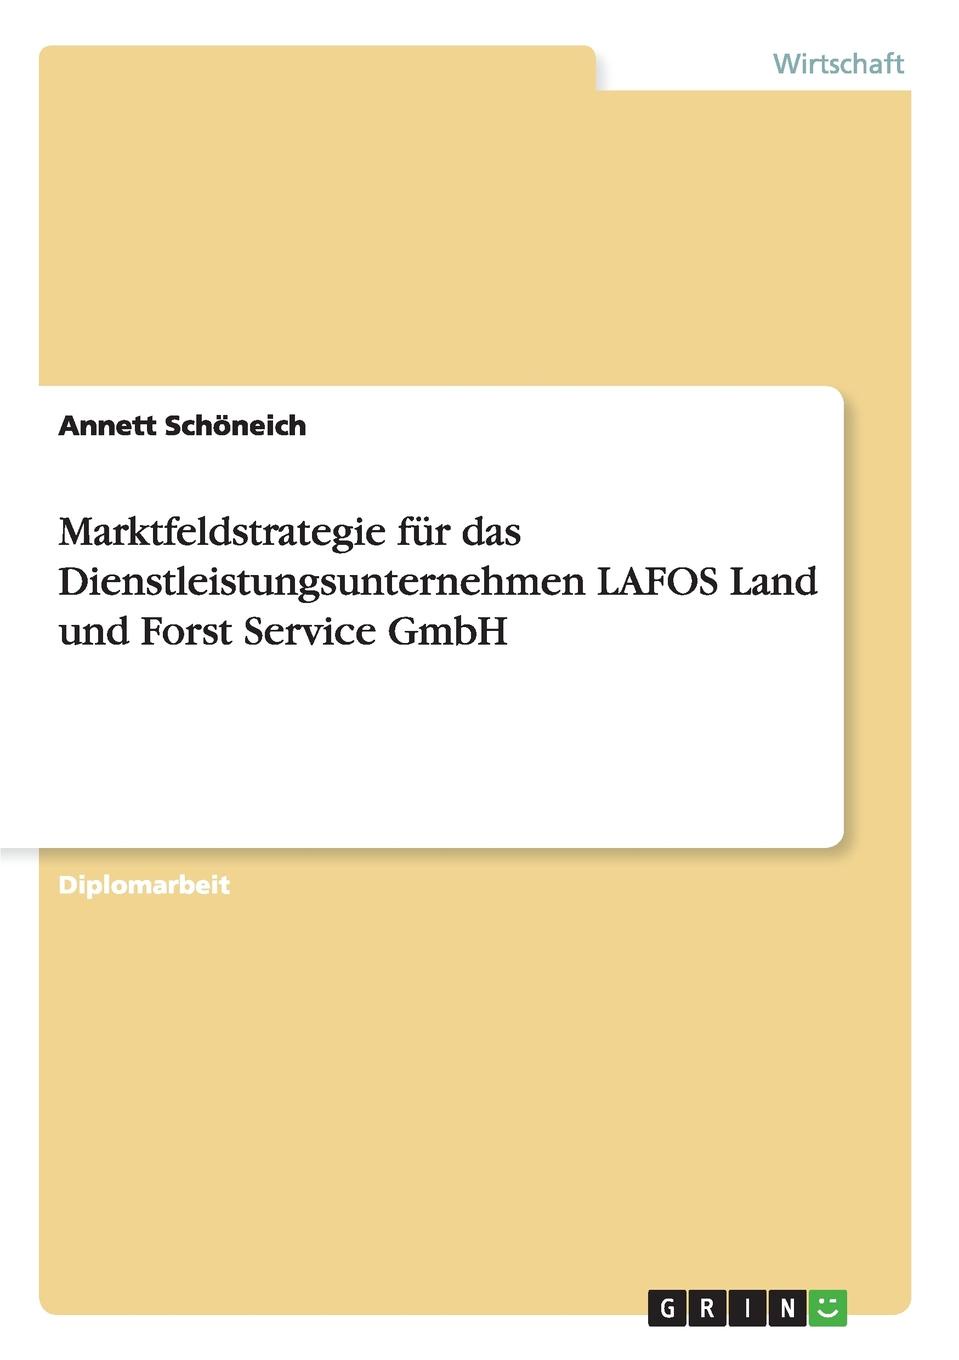 фото Marktfeldstrategie fur das Dienstleistungsunternehmen LAFOS Land und Forst Service GmbH